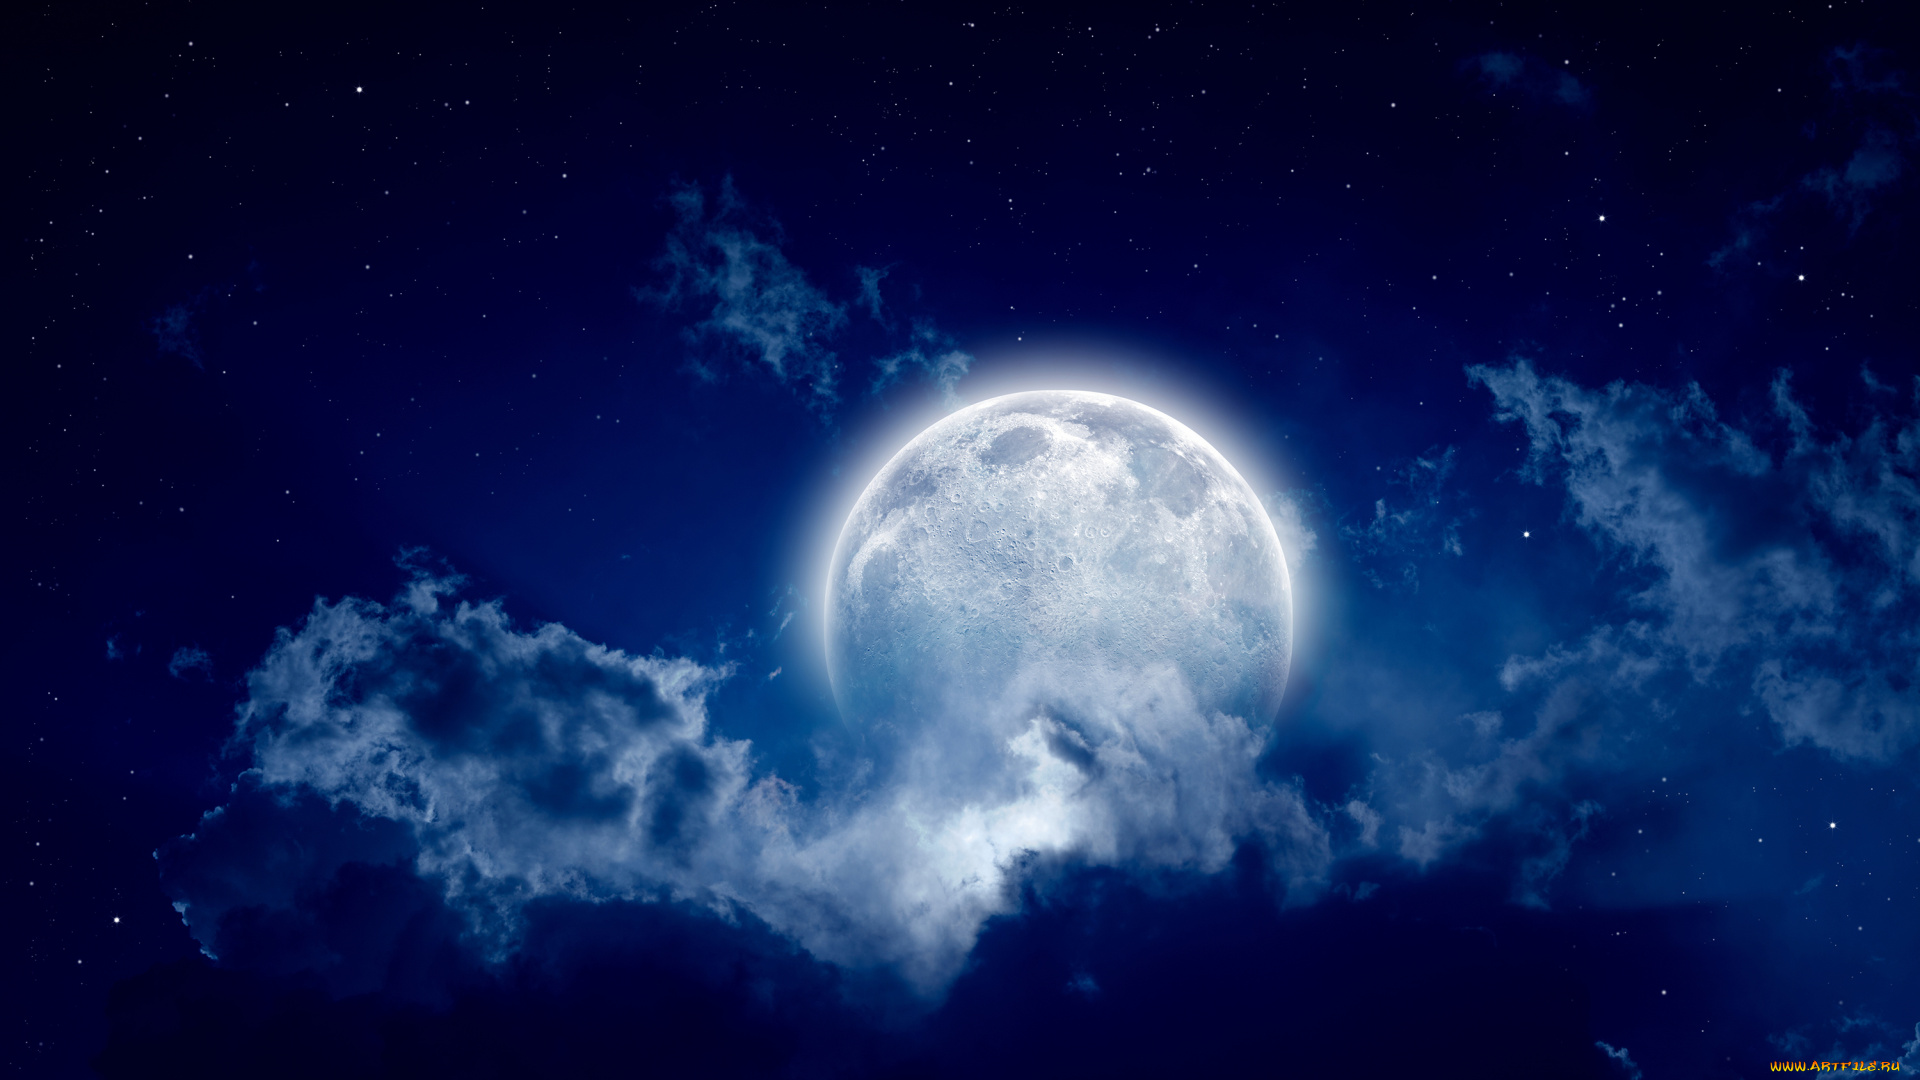 космос, луна, свет, тучи, полнолуние, пейзаж, звёзды, ночь, облака